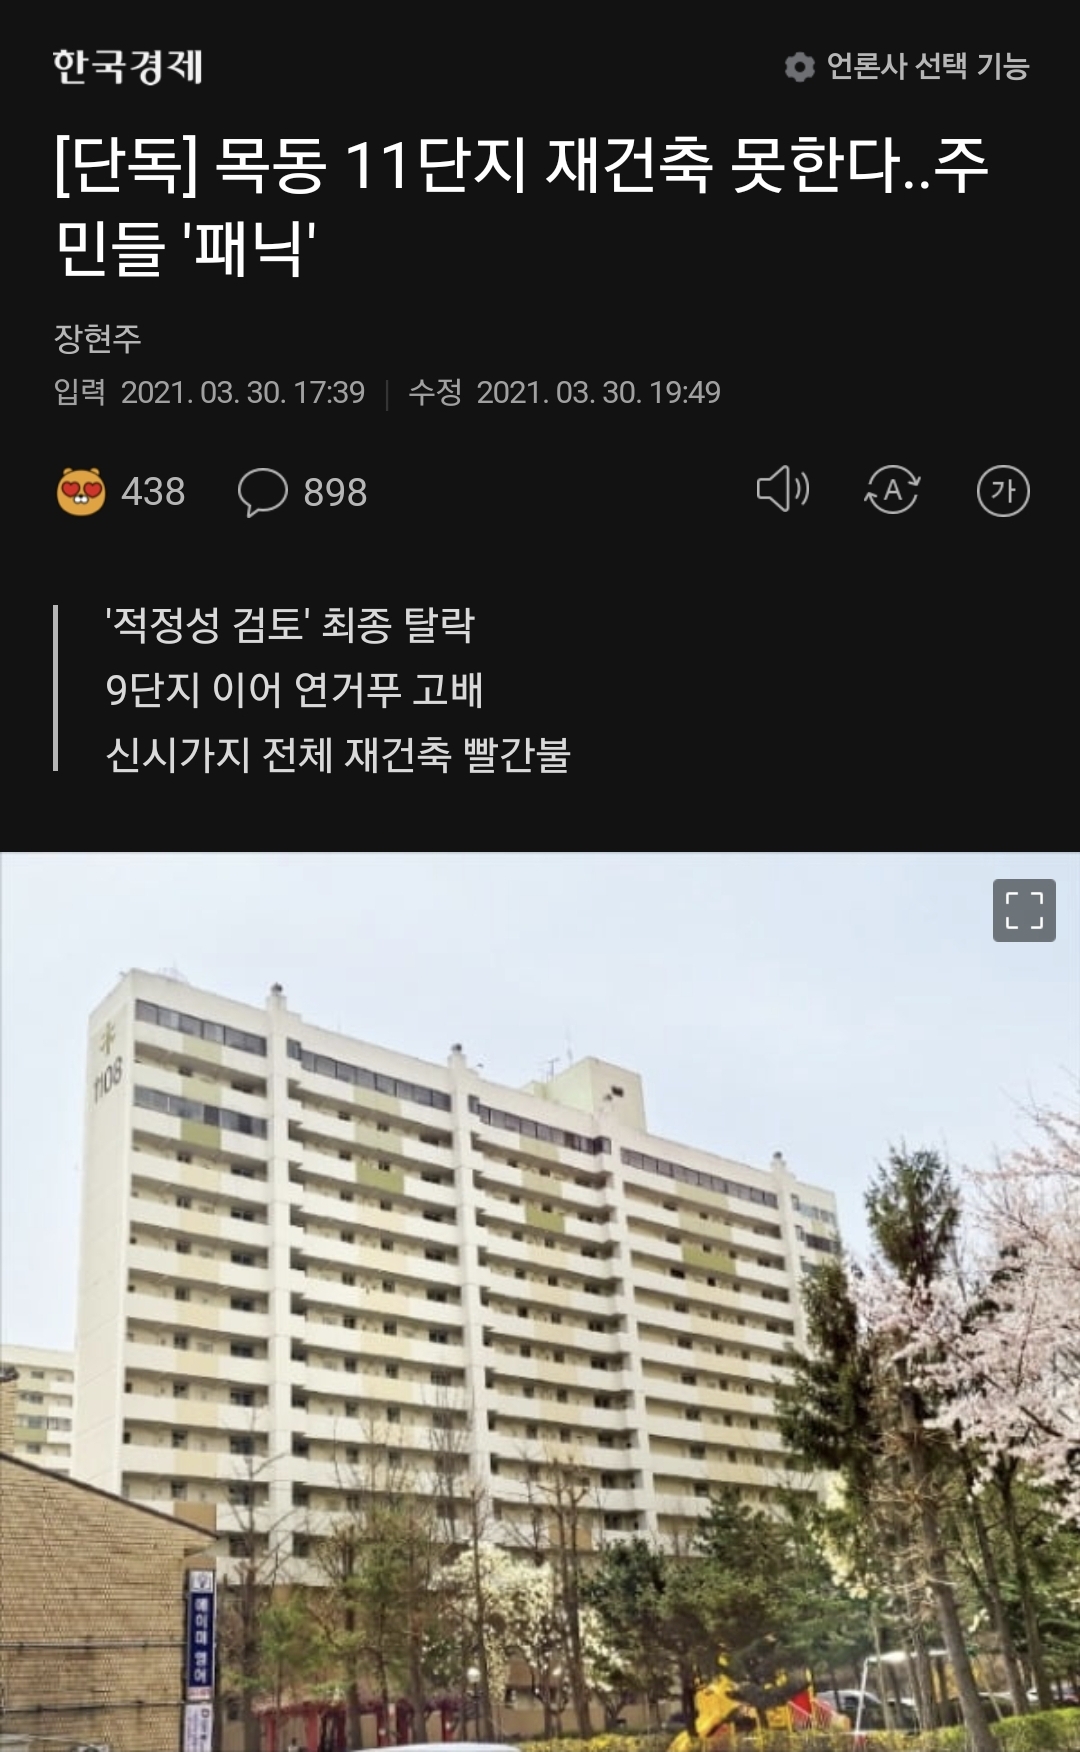 목동 아파트 정밀안전검사 통과...주민들 환호